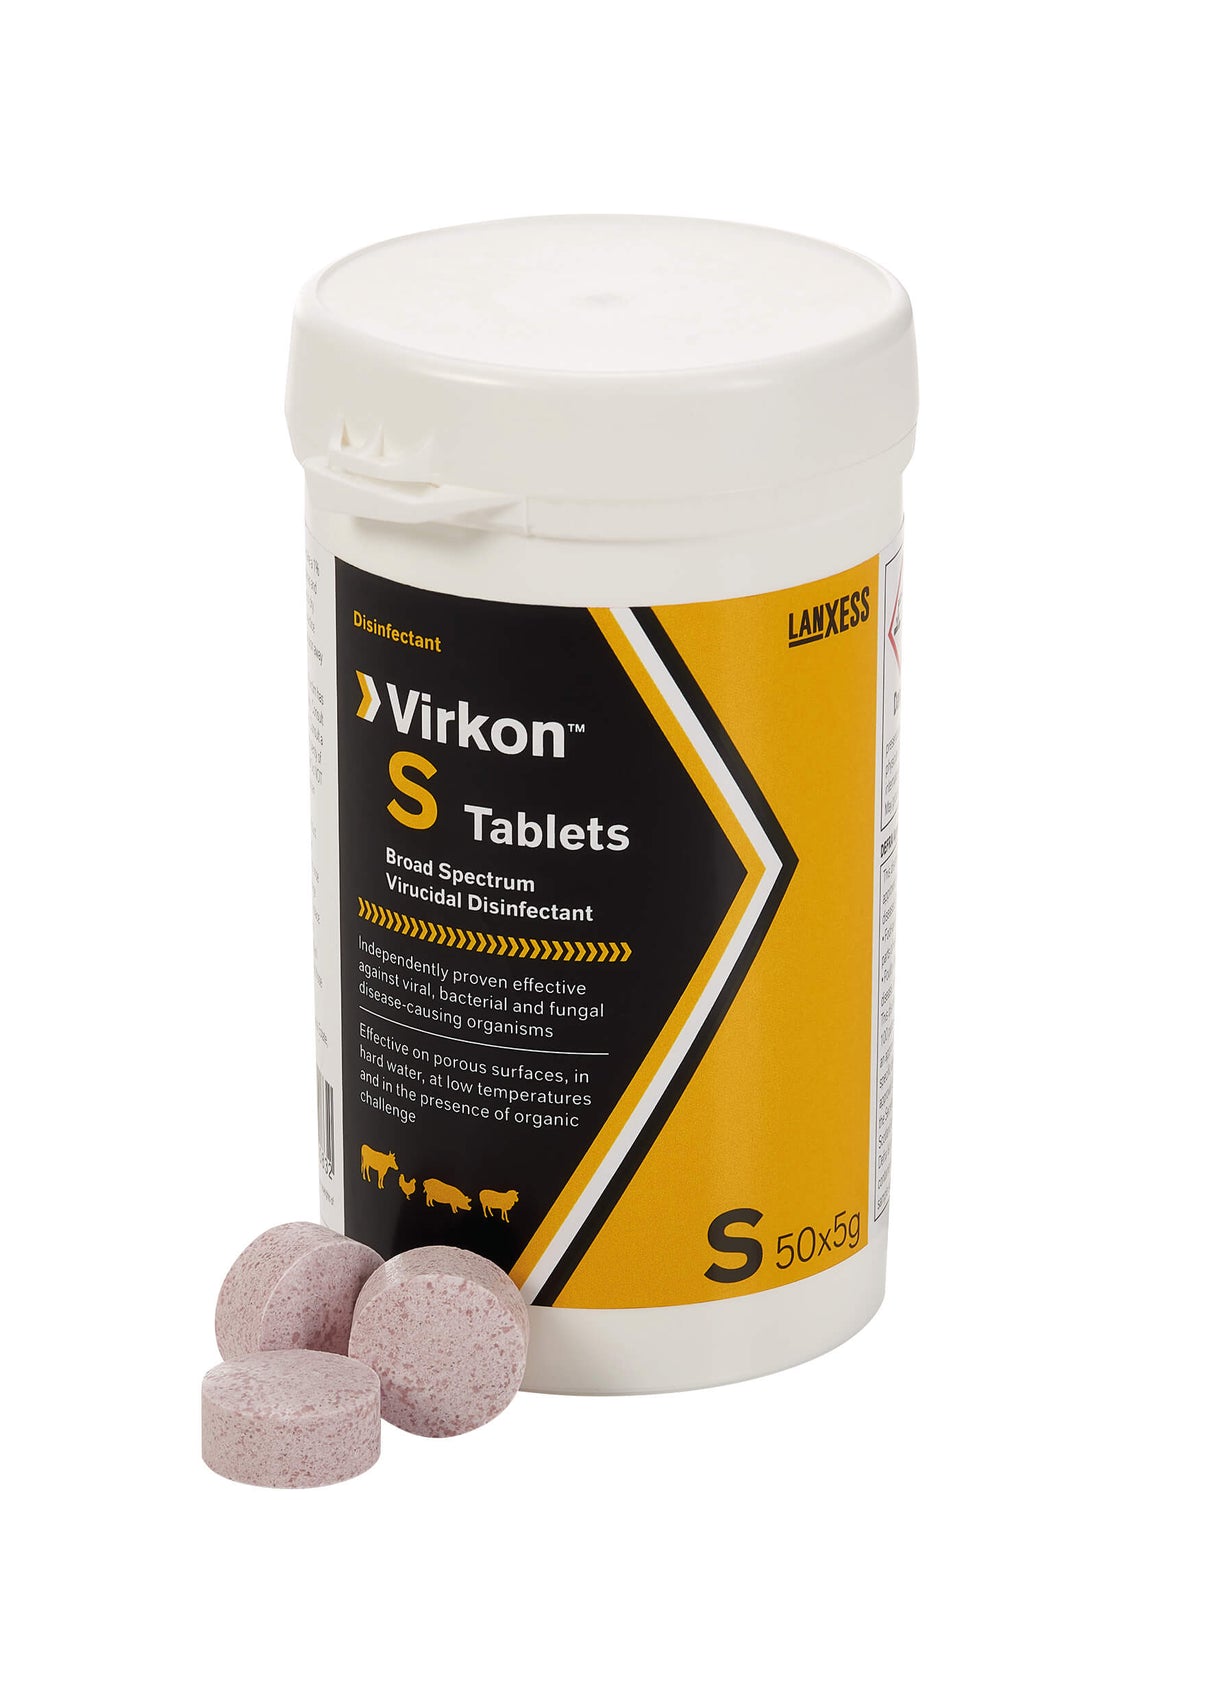 Virkon S tablets